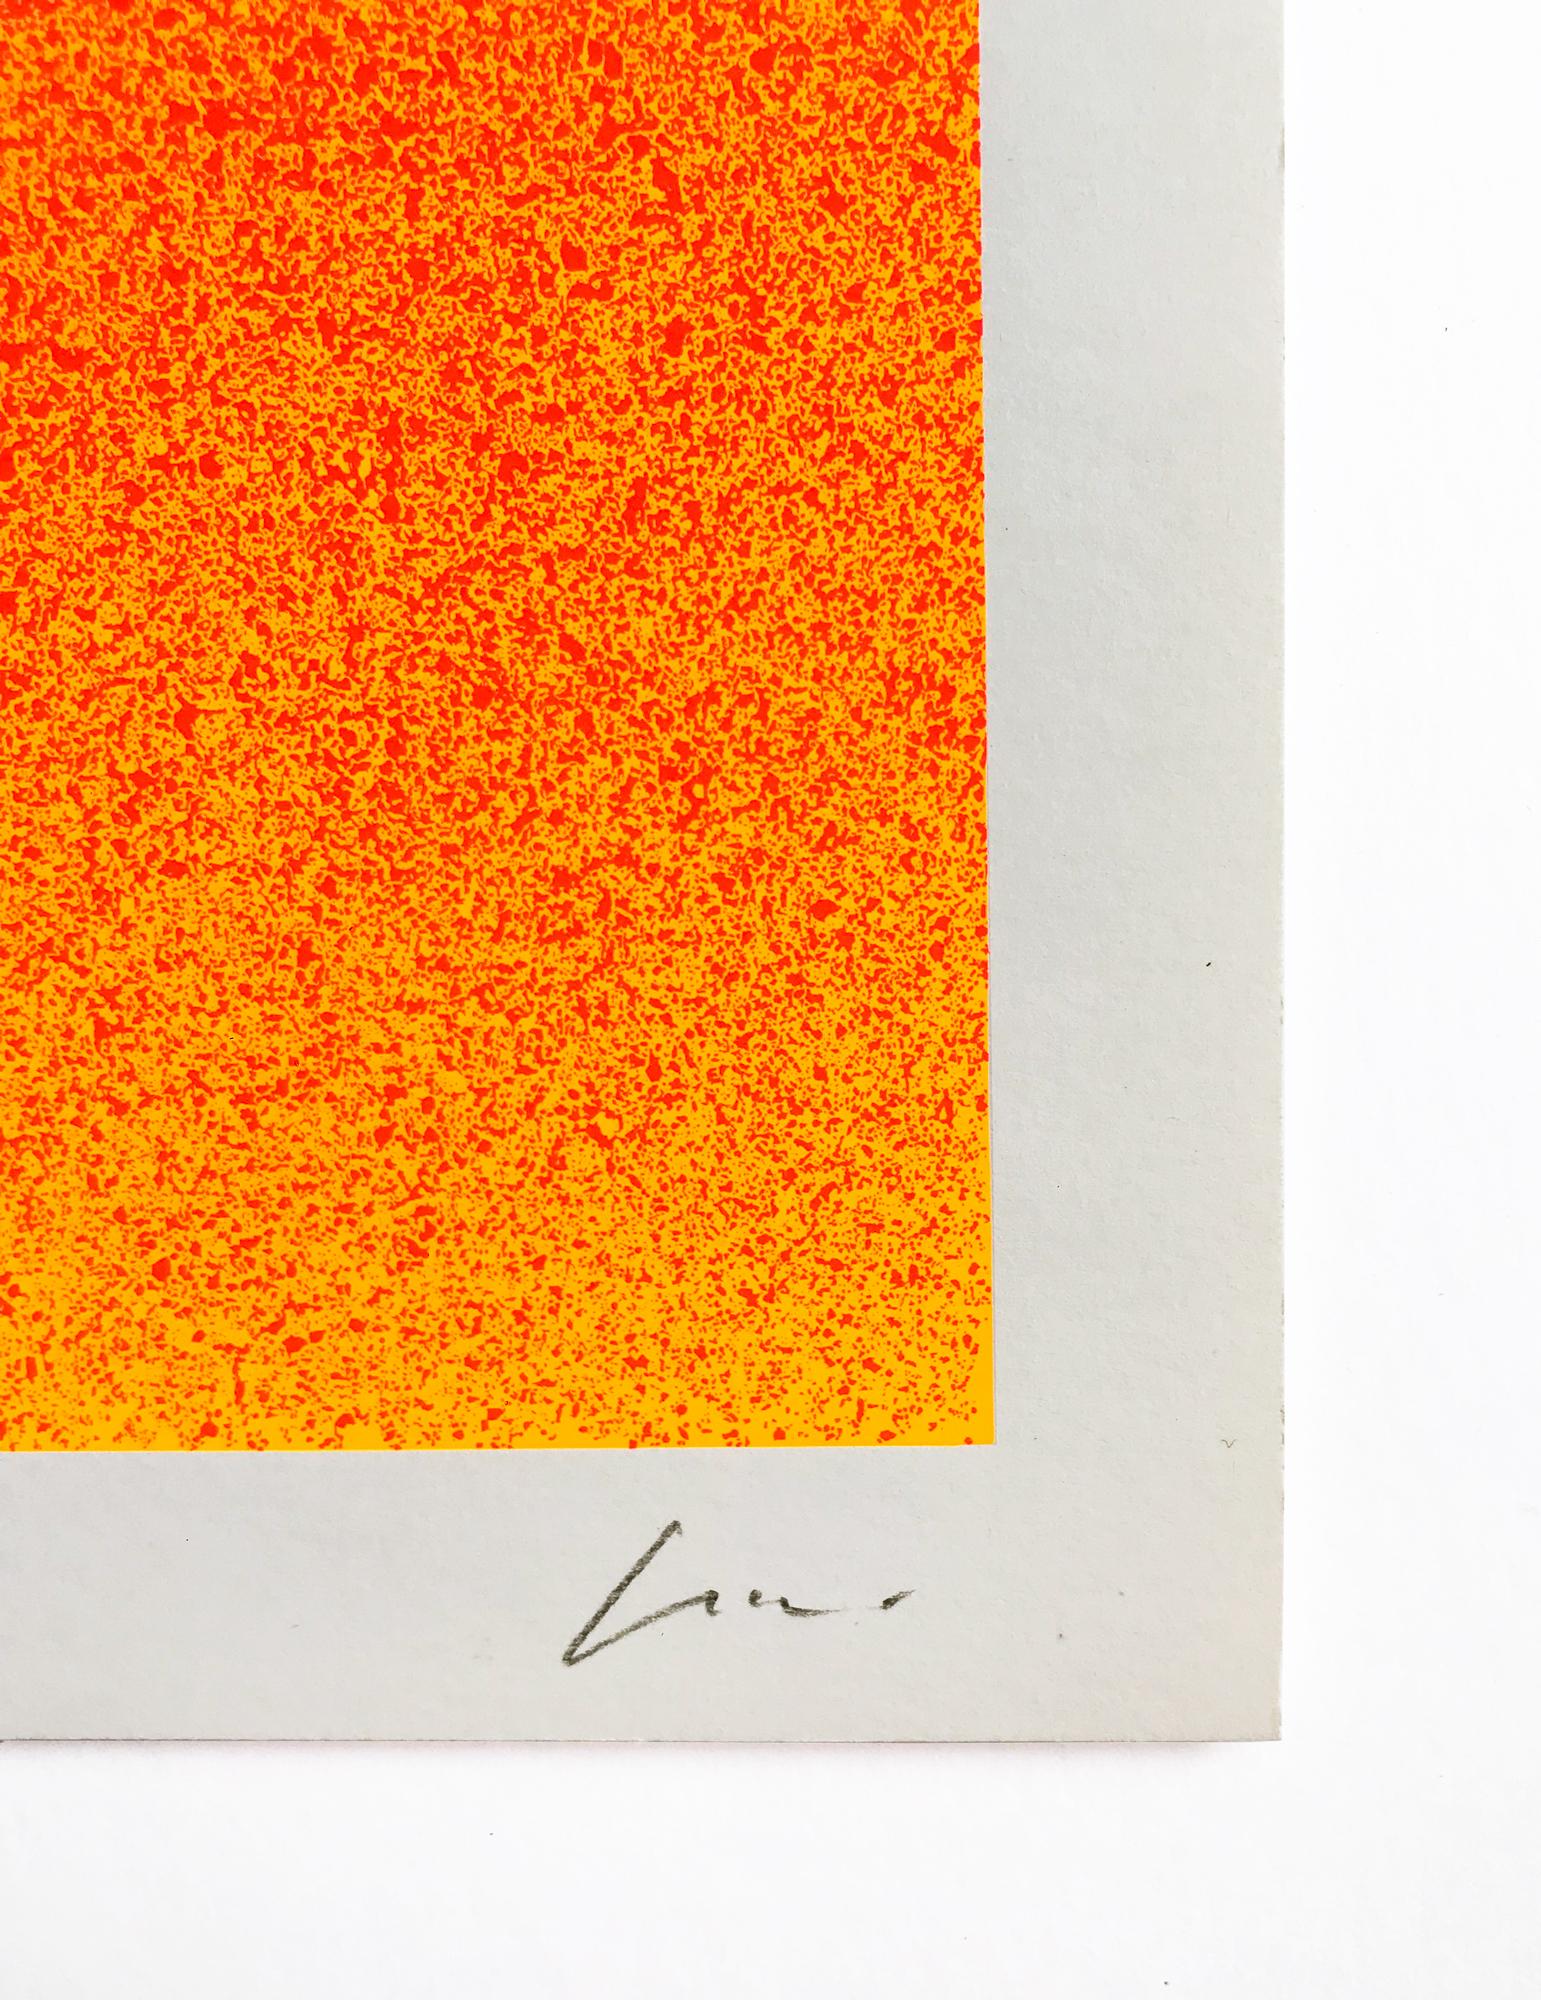 Rupprecht Geiger, Grün auf Orange, 1969, Siebdruck, Abstrakte Kunst, signiert 1